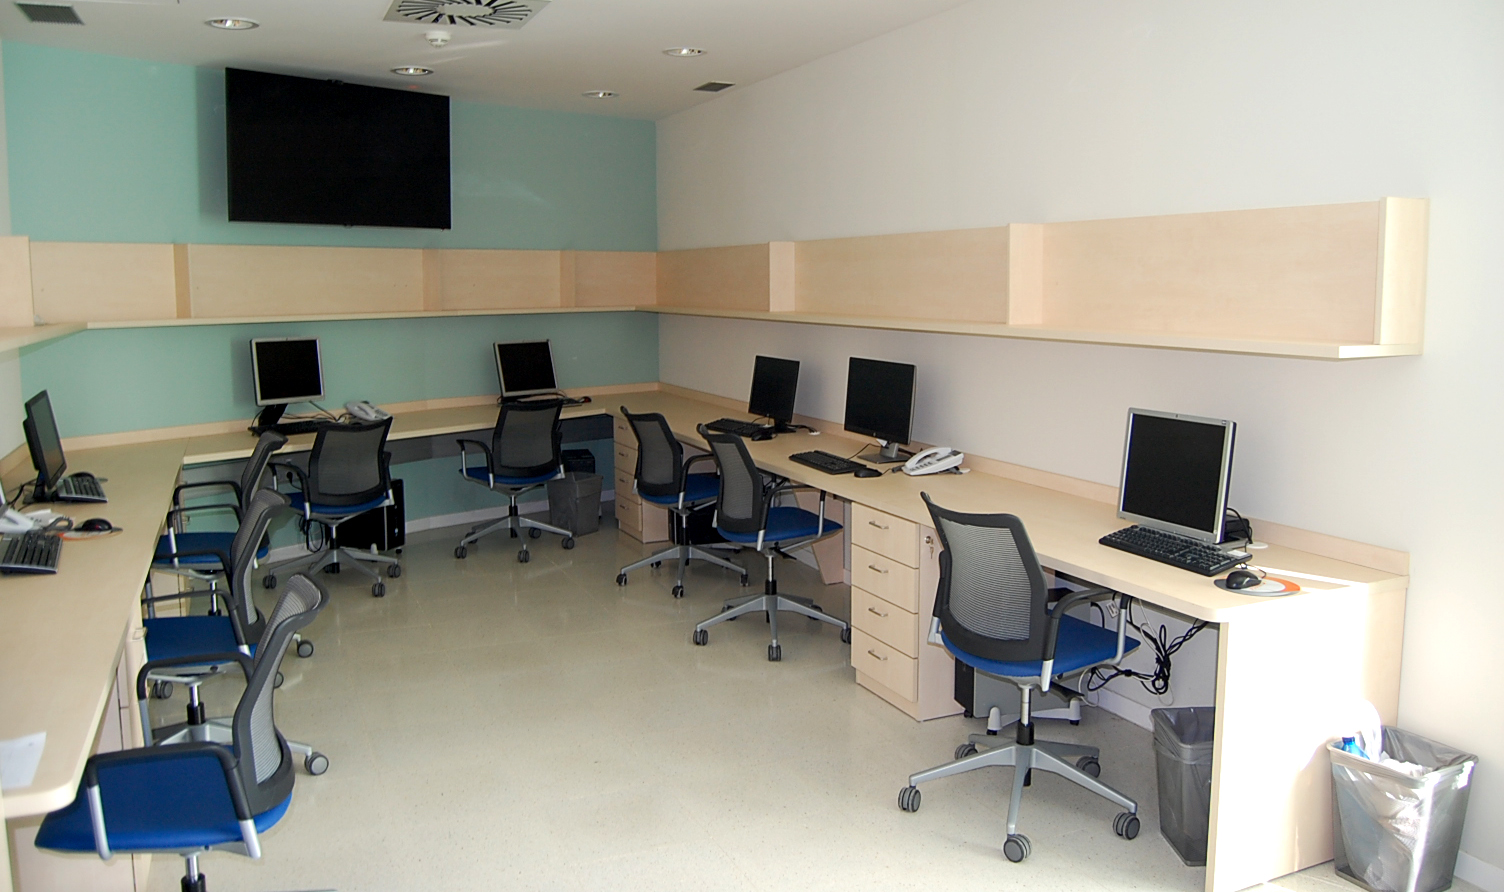 Mobiliario para oficinas en melamina color haya. 